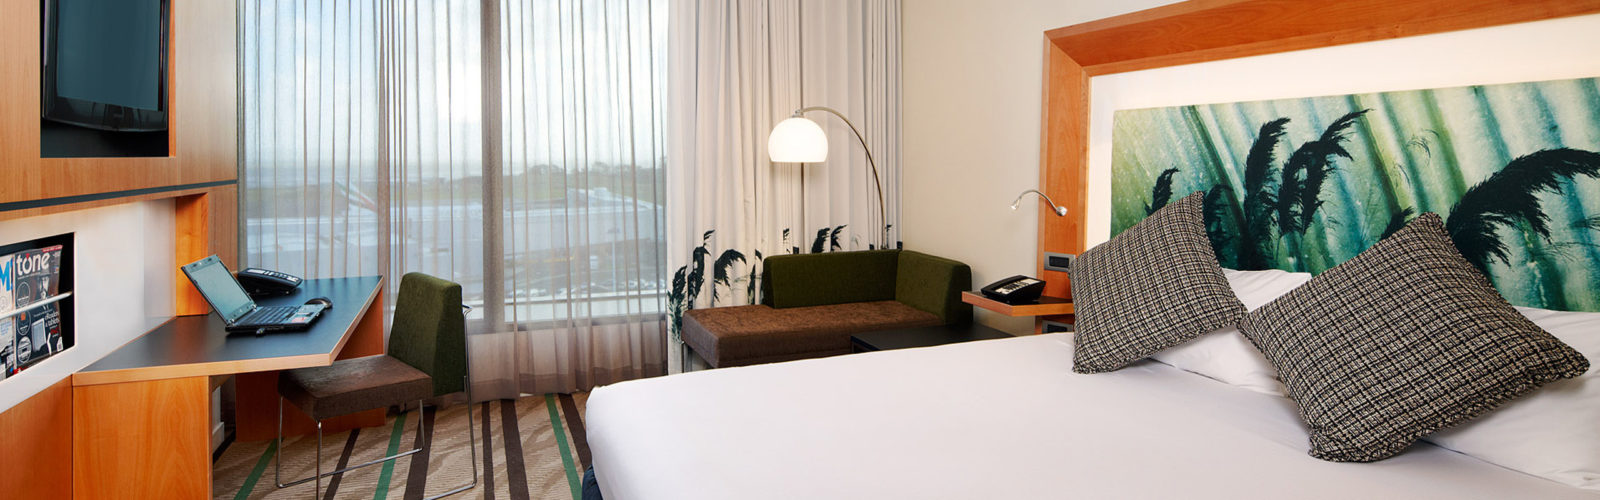 novotel-auckland-airport-bedroom